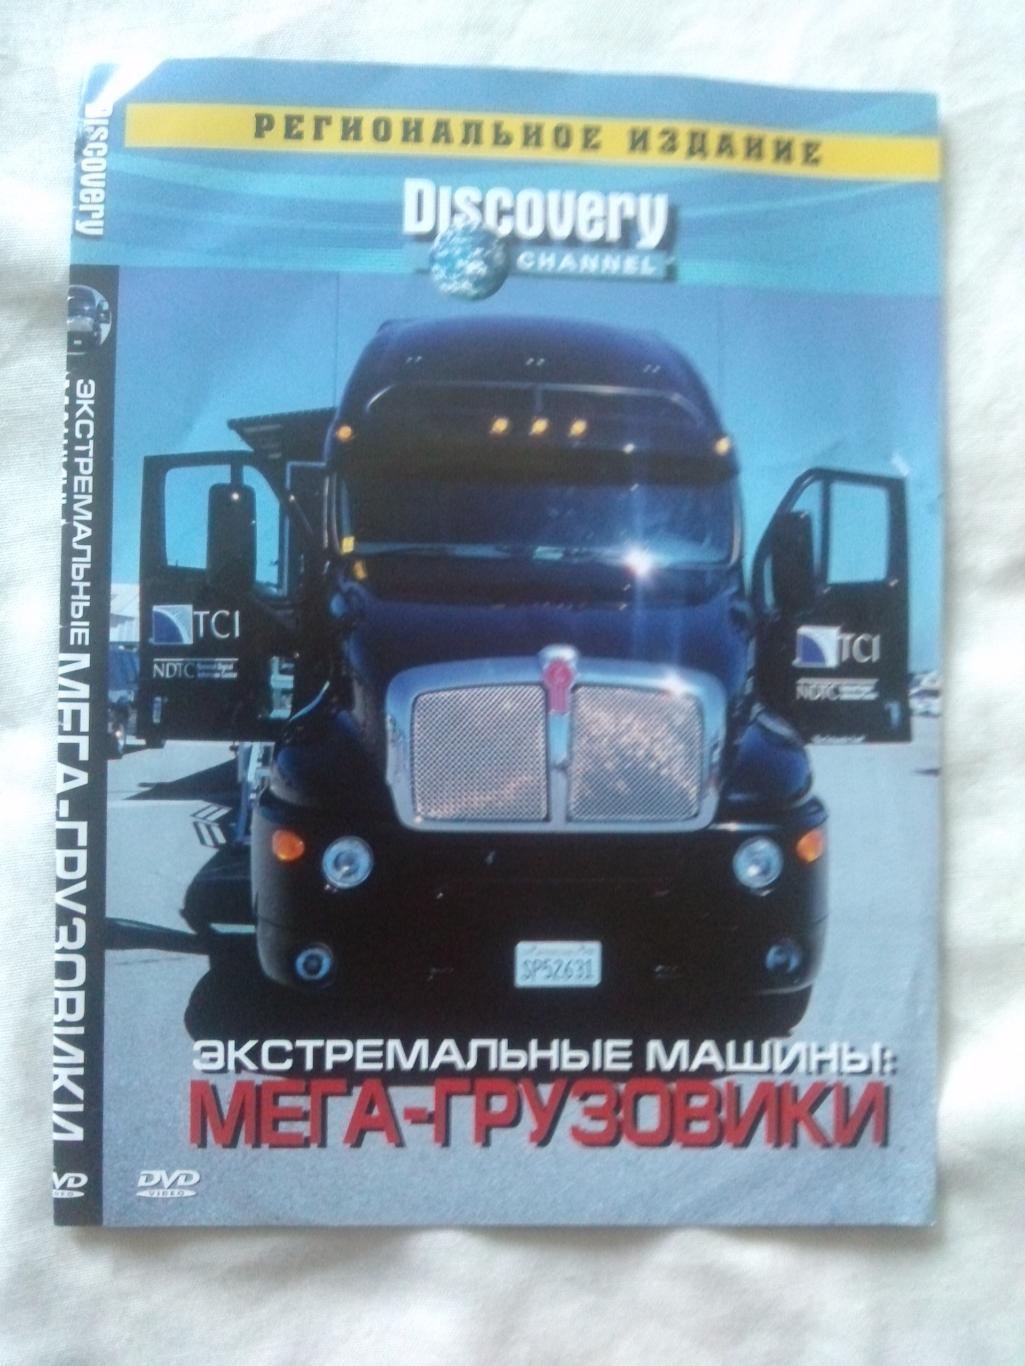 DVD Discovery : Экстремальные машины - Мегагрузовики (лицензия) Техника (новый)